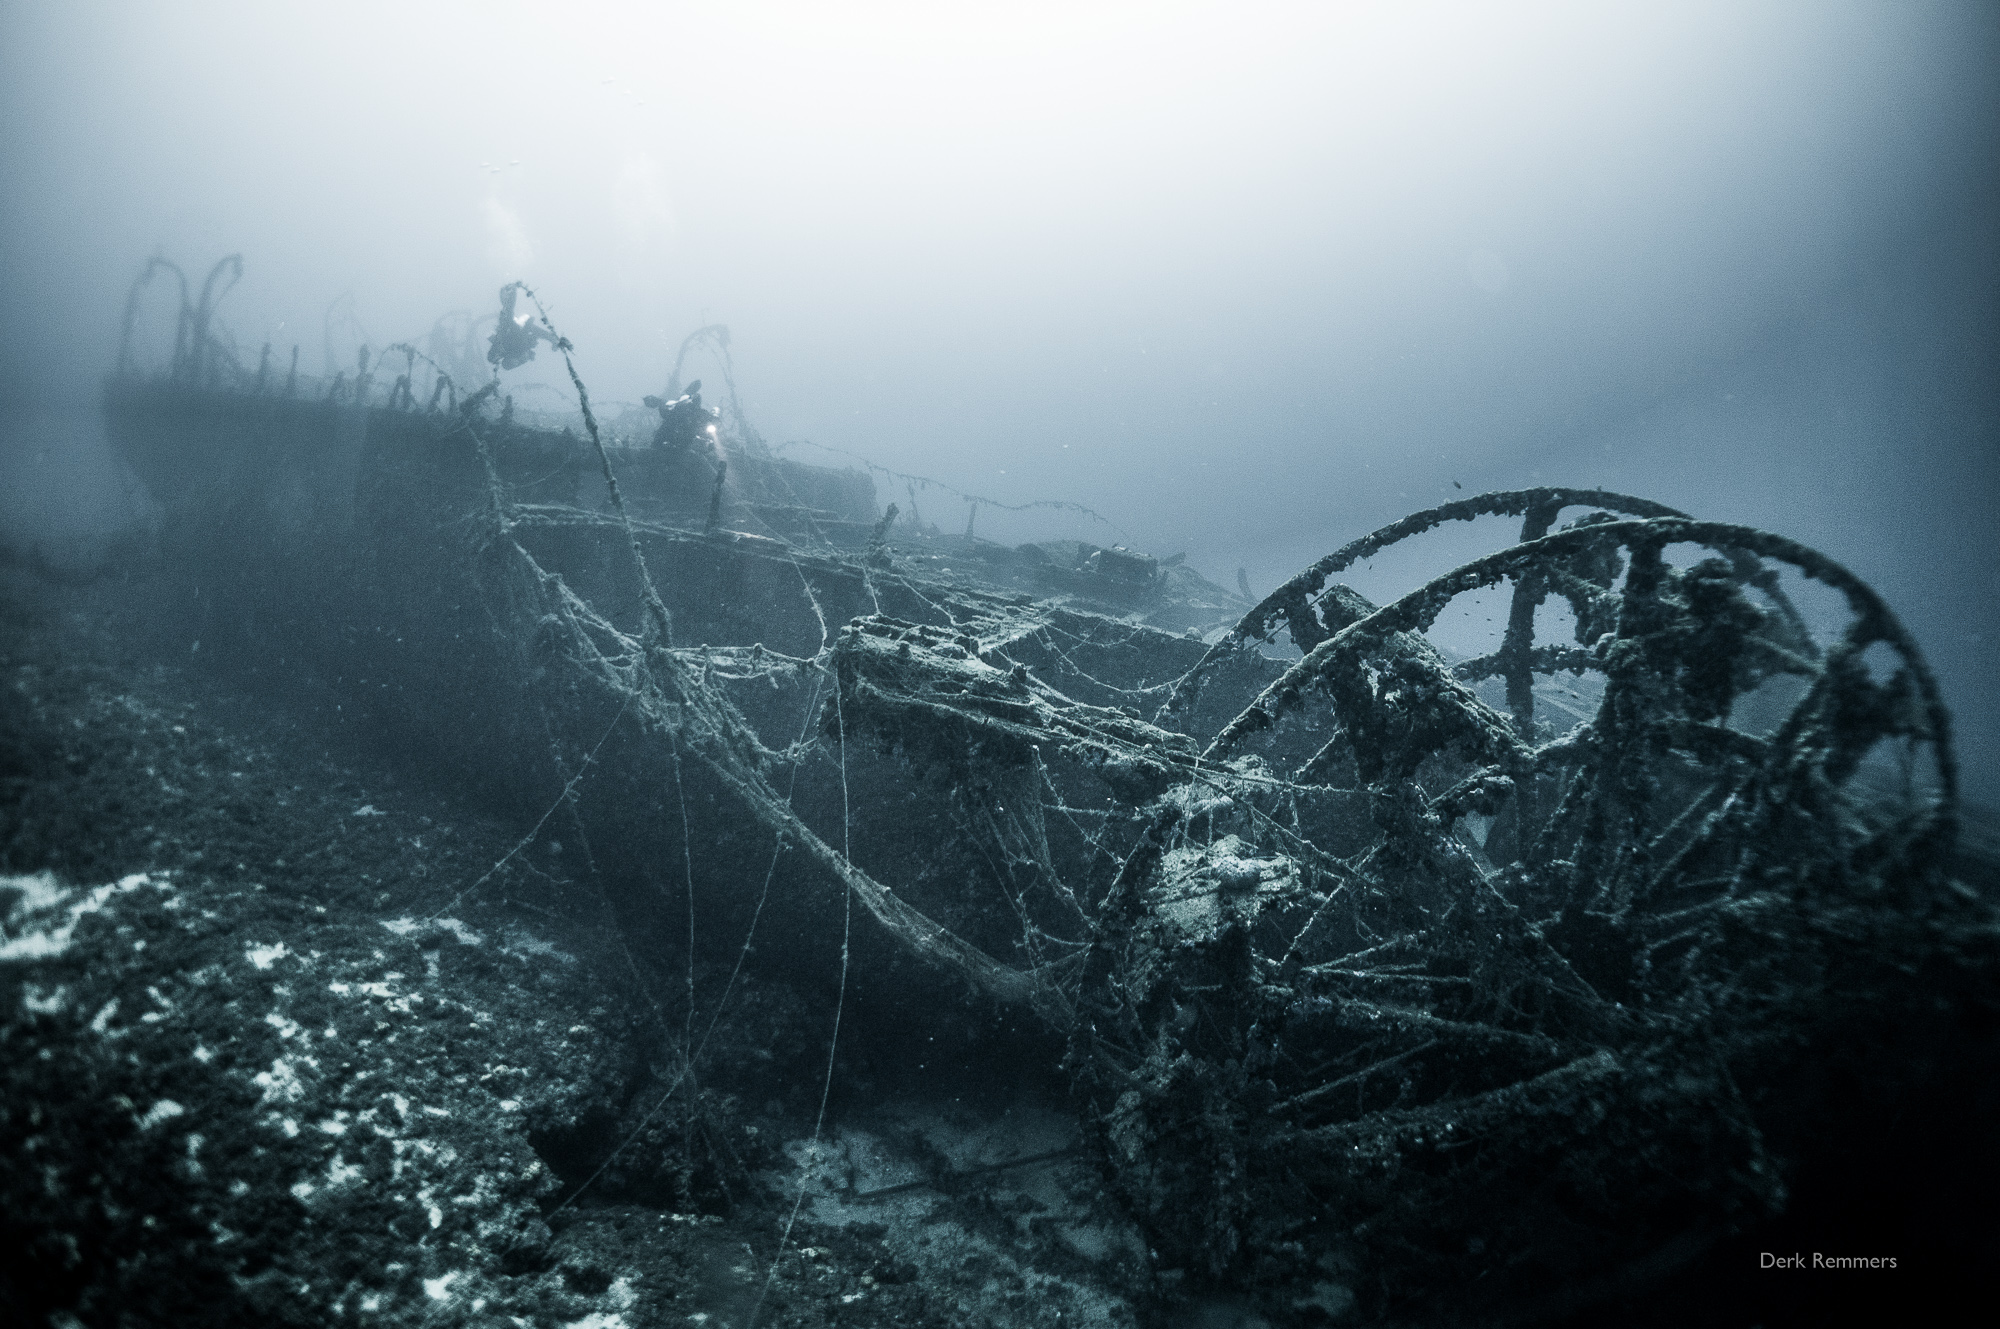 kea-opens-spectacular-shipwreck-dive-sites0